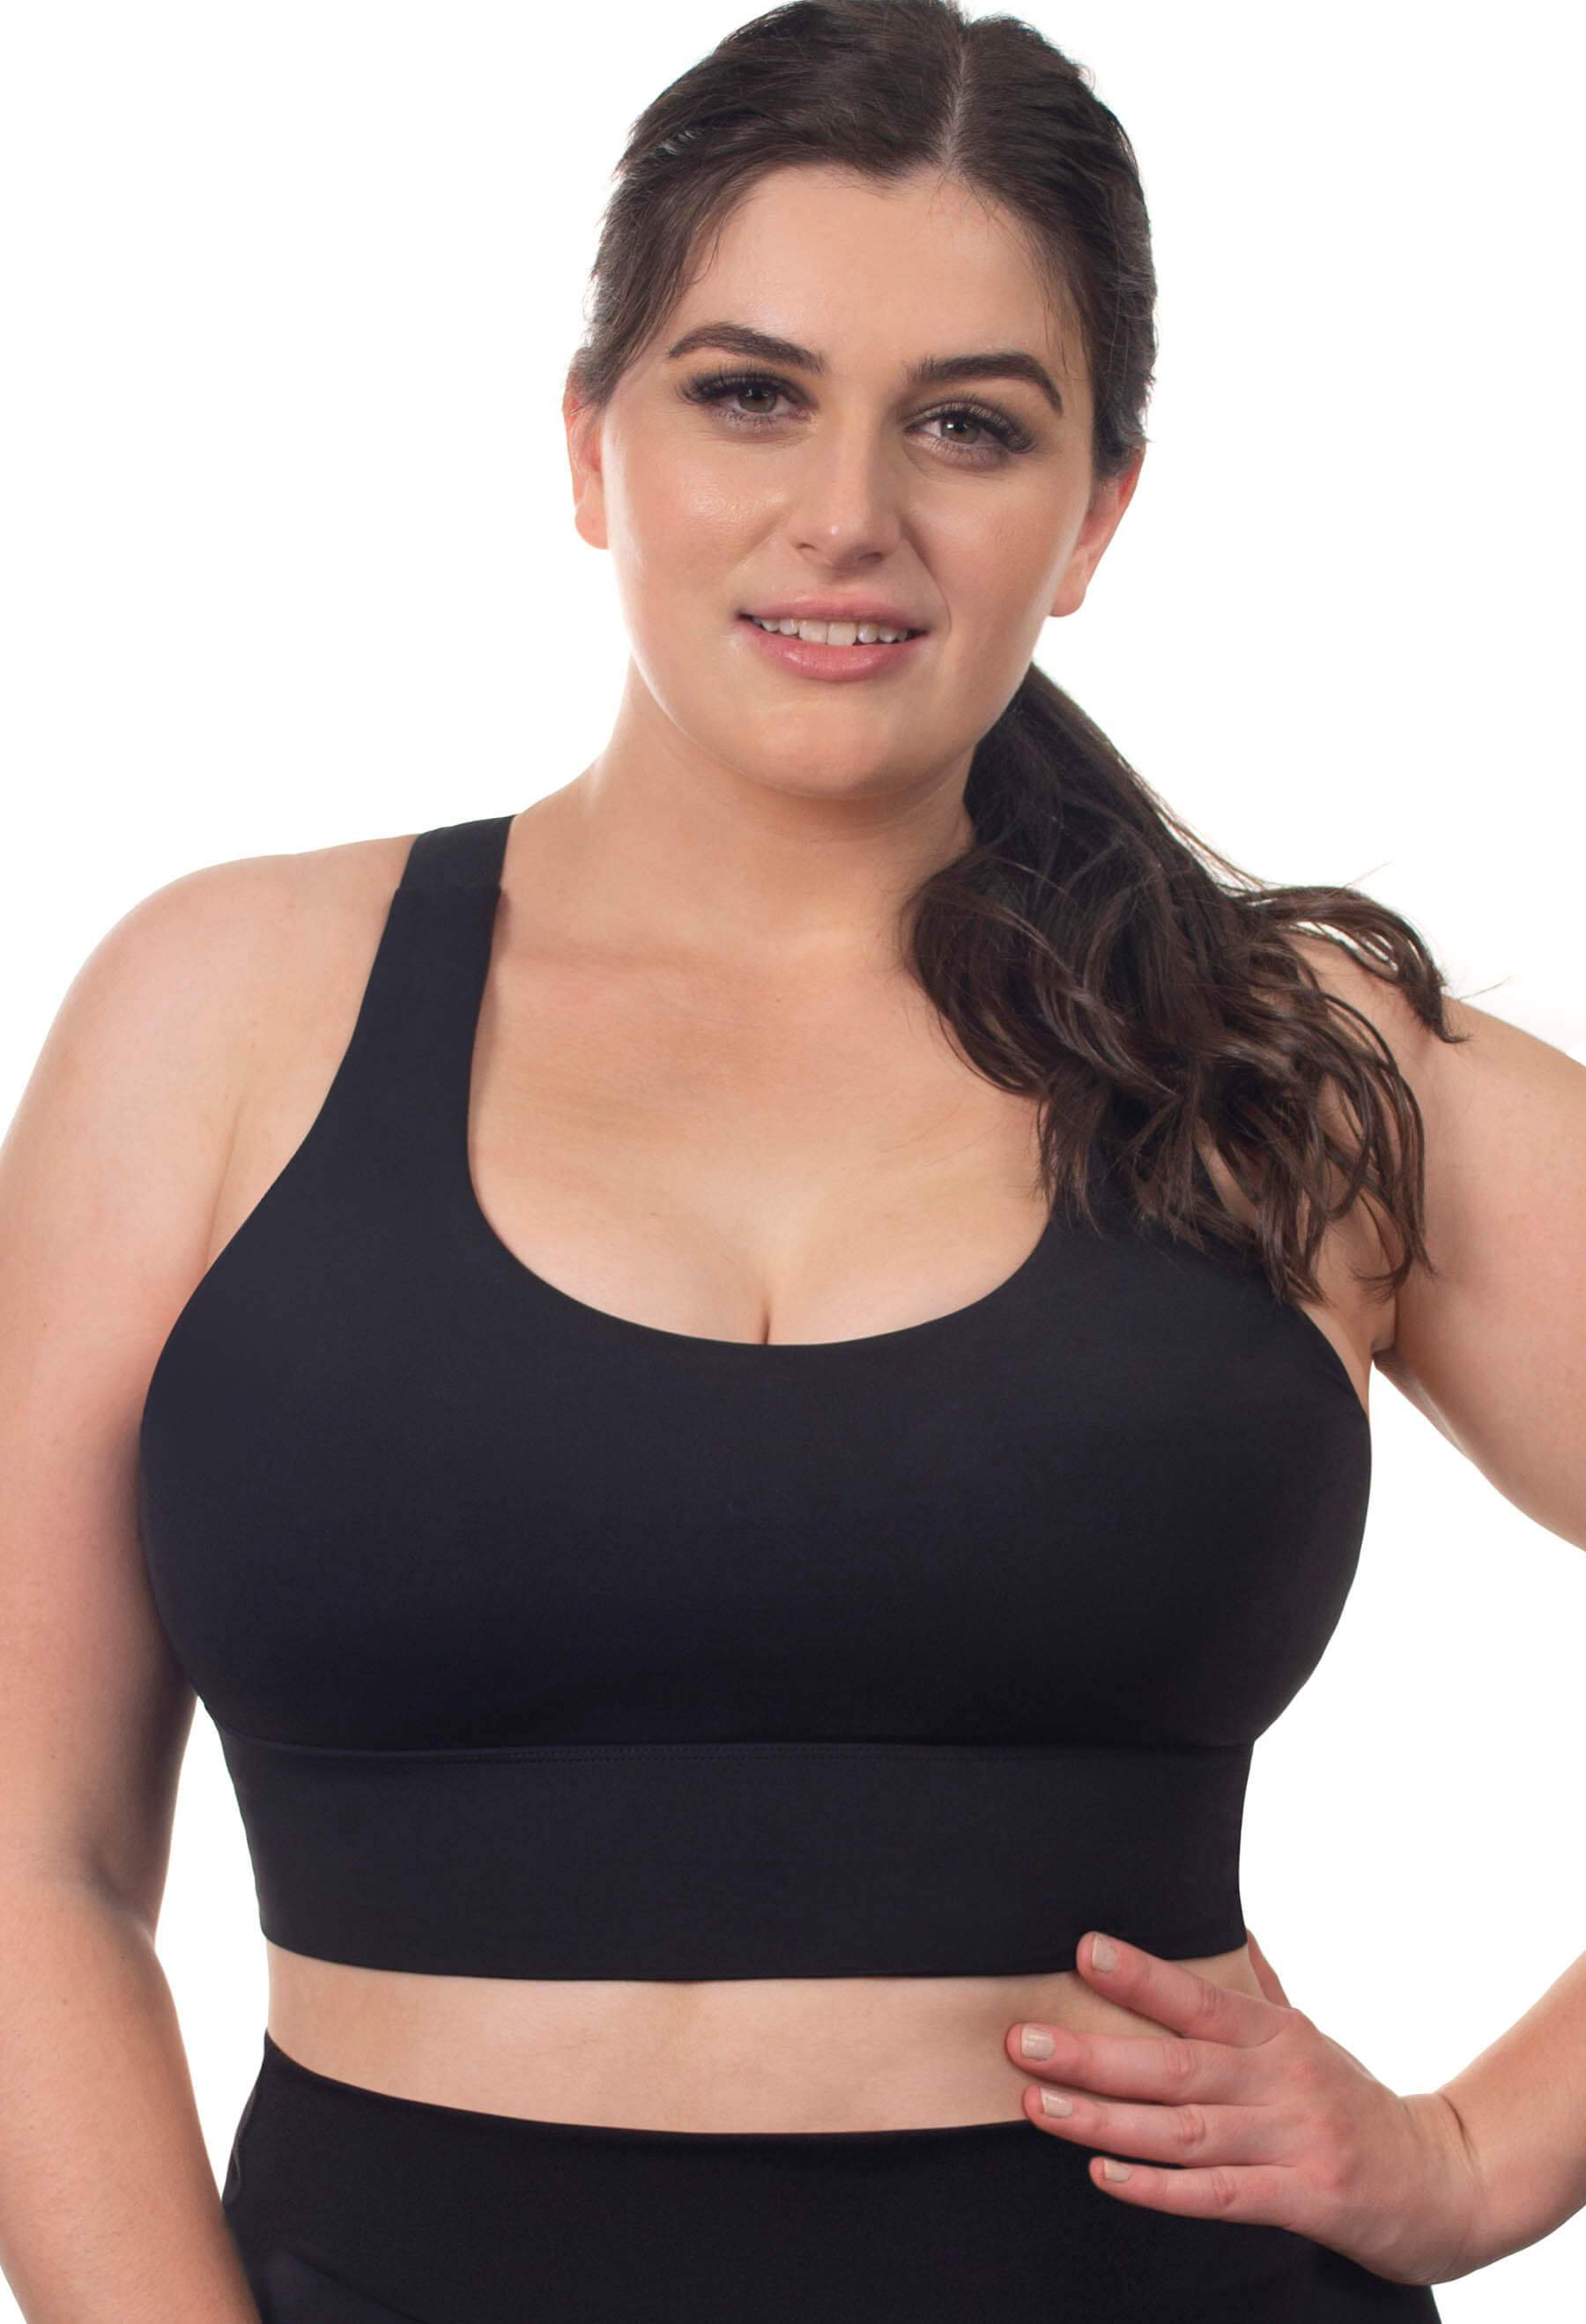 Women's Plus Size Siren Bralette and short lingerie set - Black